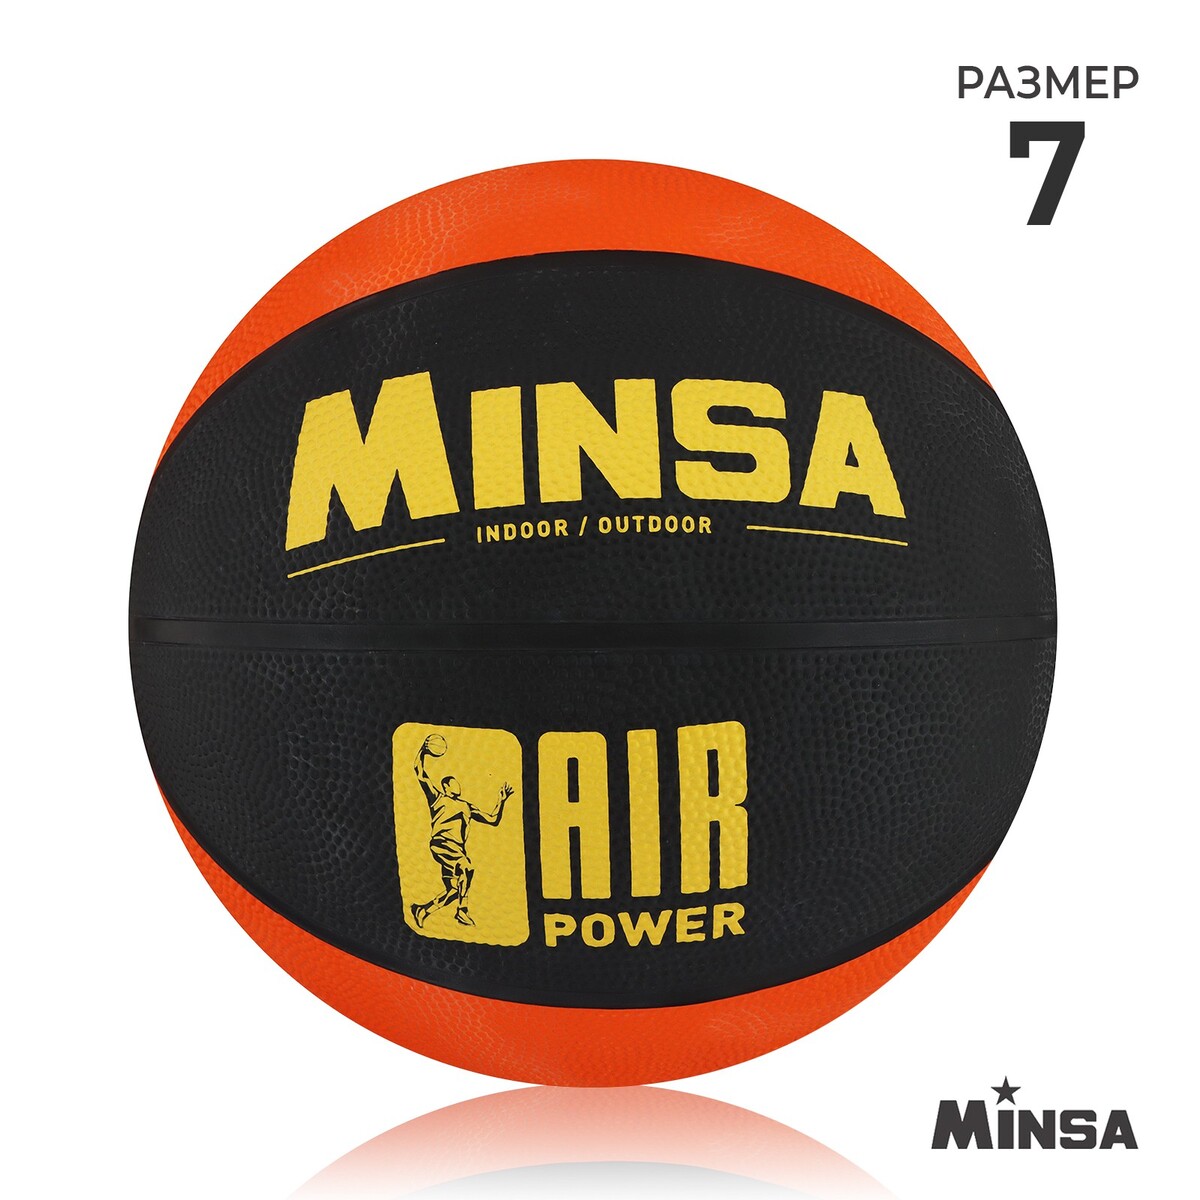 Мяч баскетбольный minsa air power, пвх, клееный, 8 панелей, р. 7 мяч баскетбольный minsa street пвх клееный 8 панелей р 7